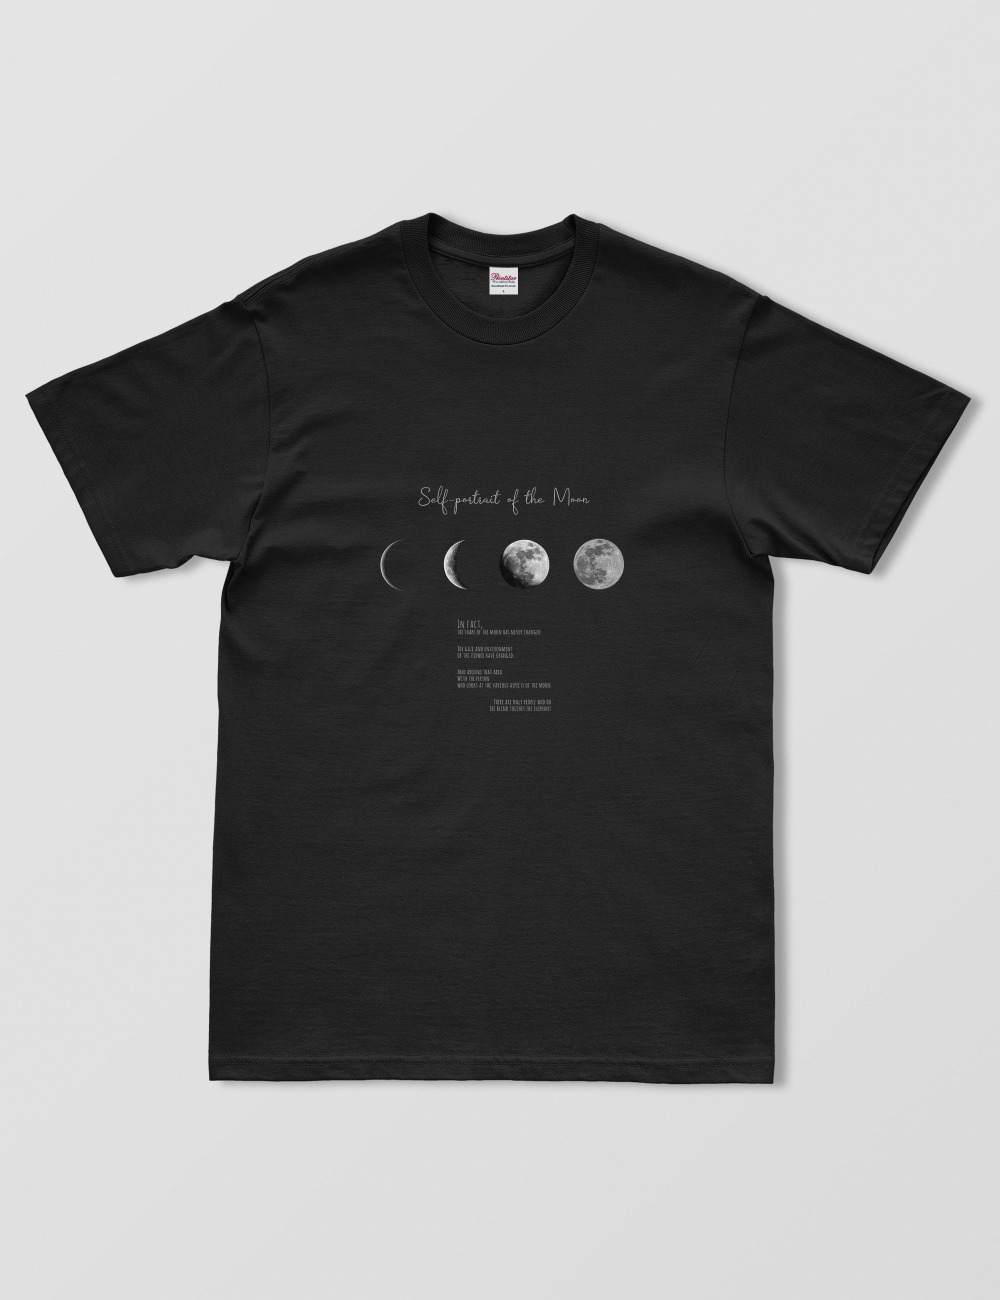 달의 자화상 half t-shirt